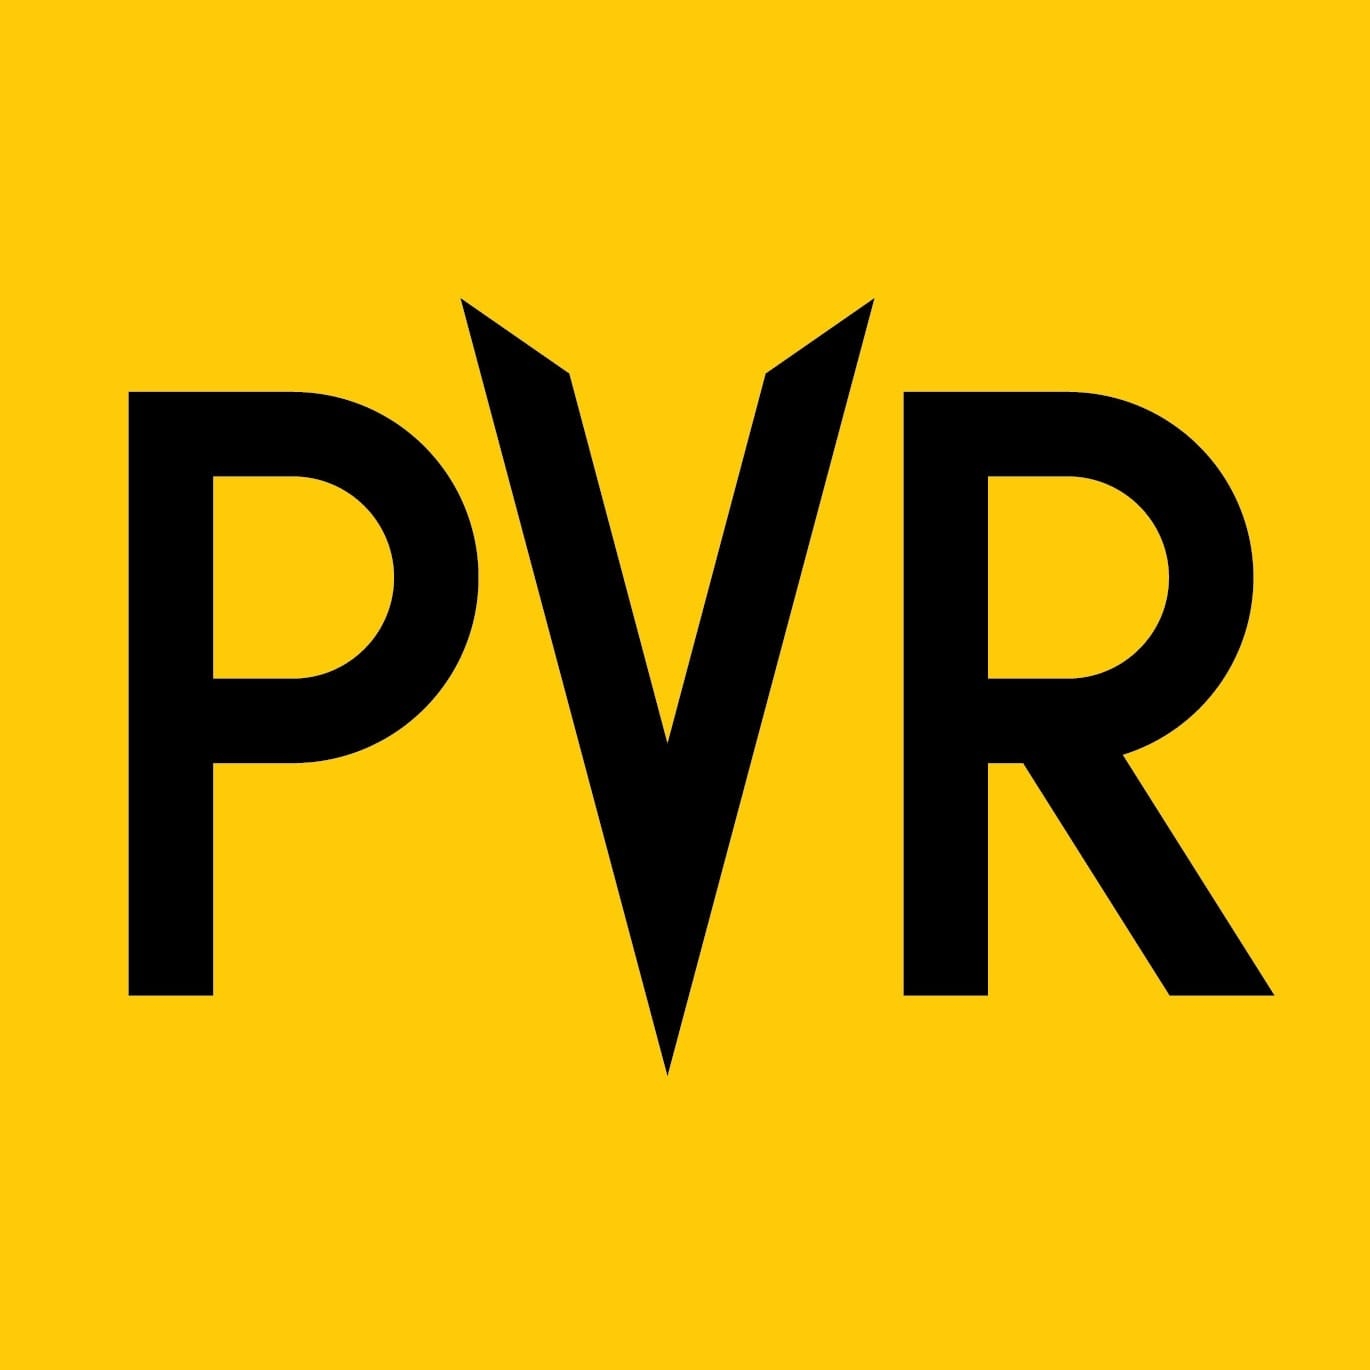 PVR Premiere|Adventure Park|Entertainment